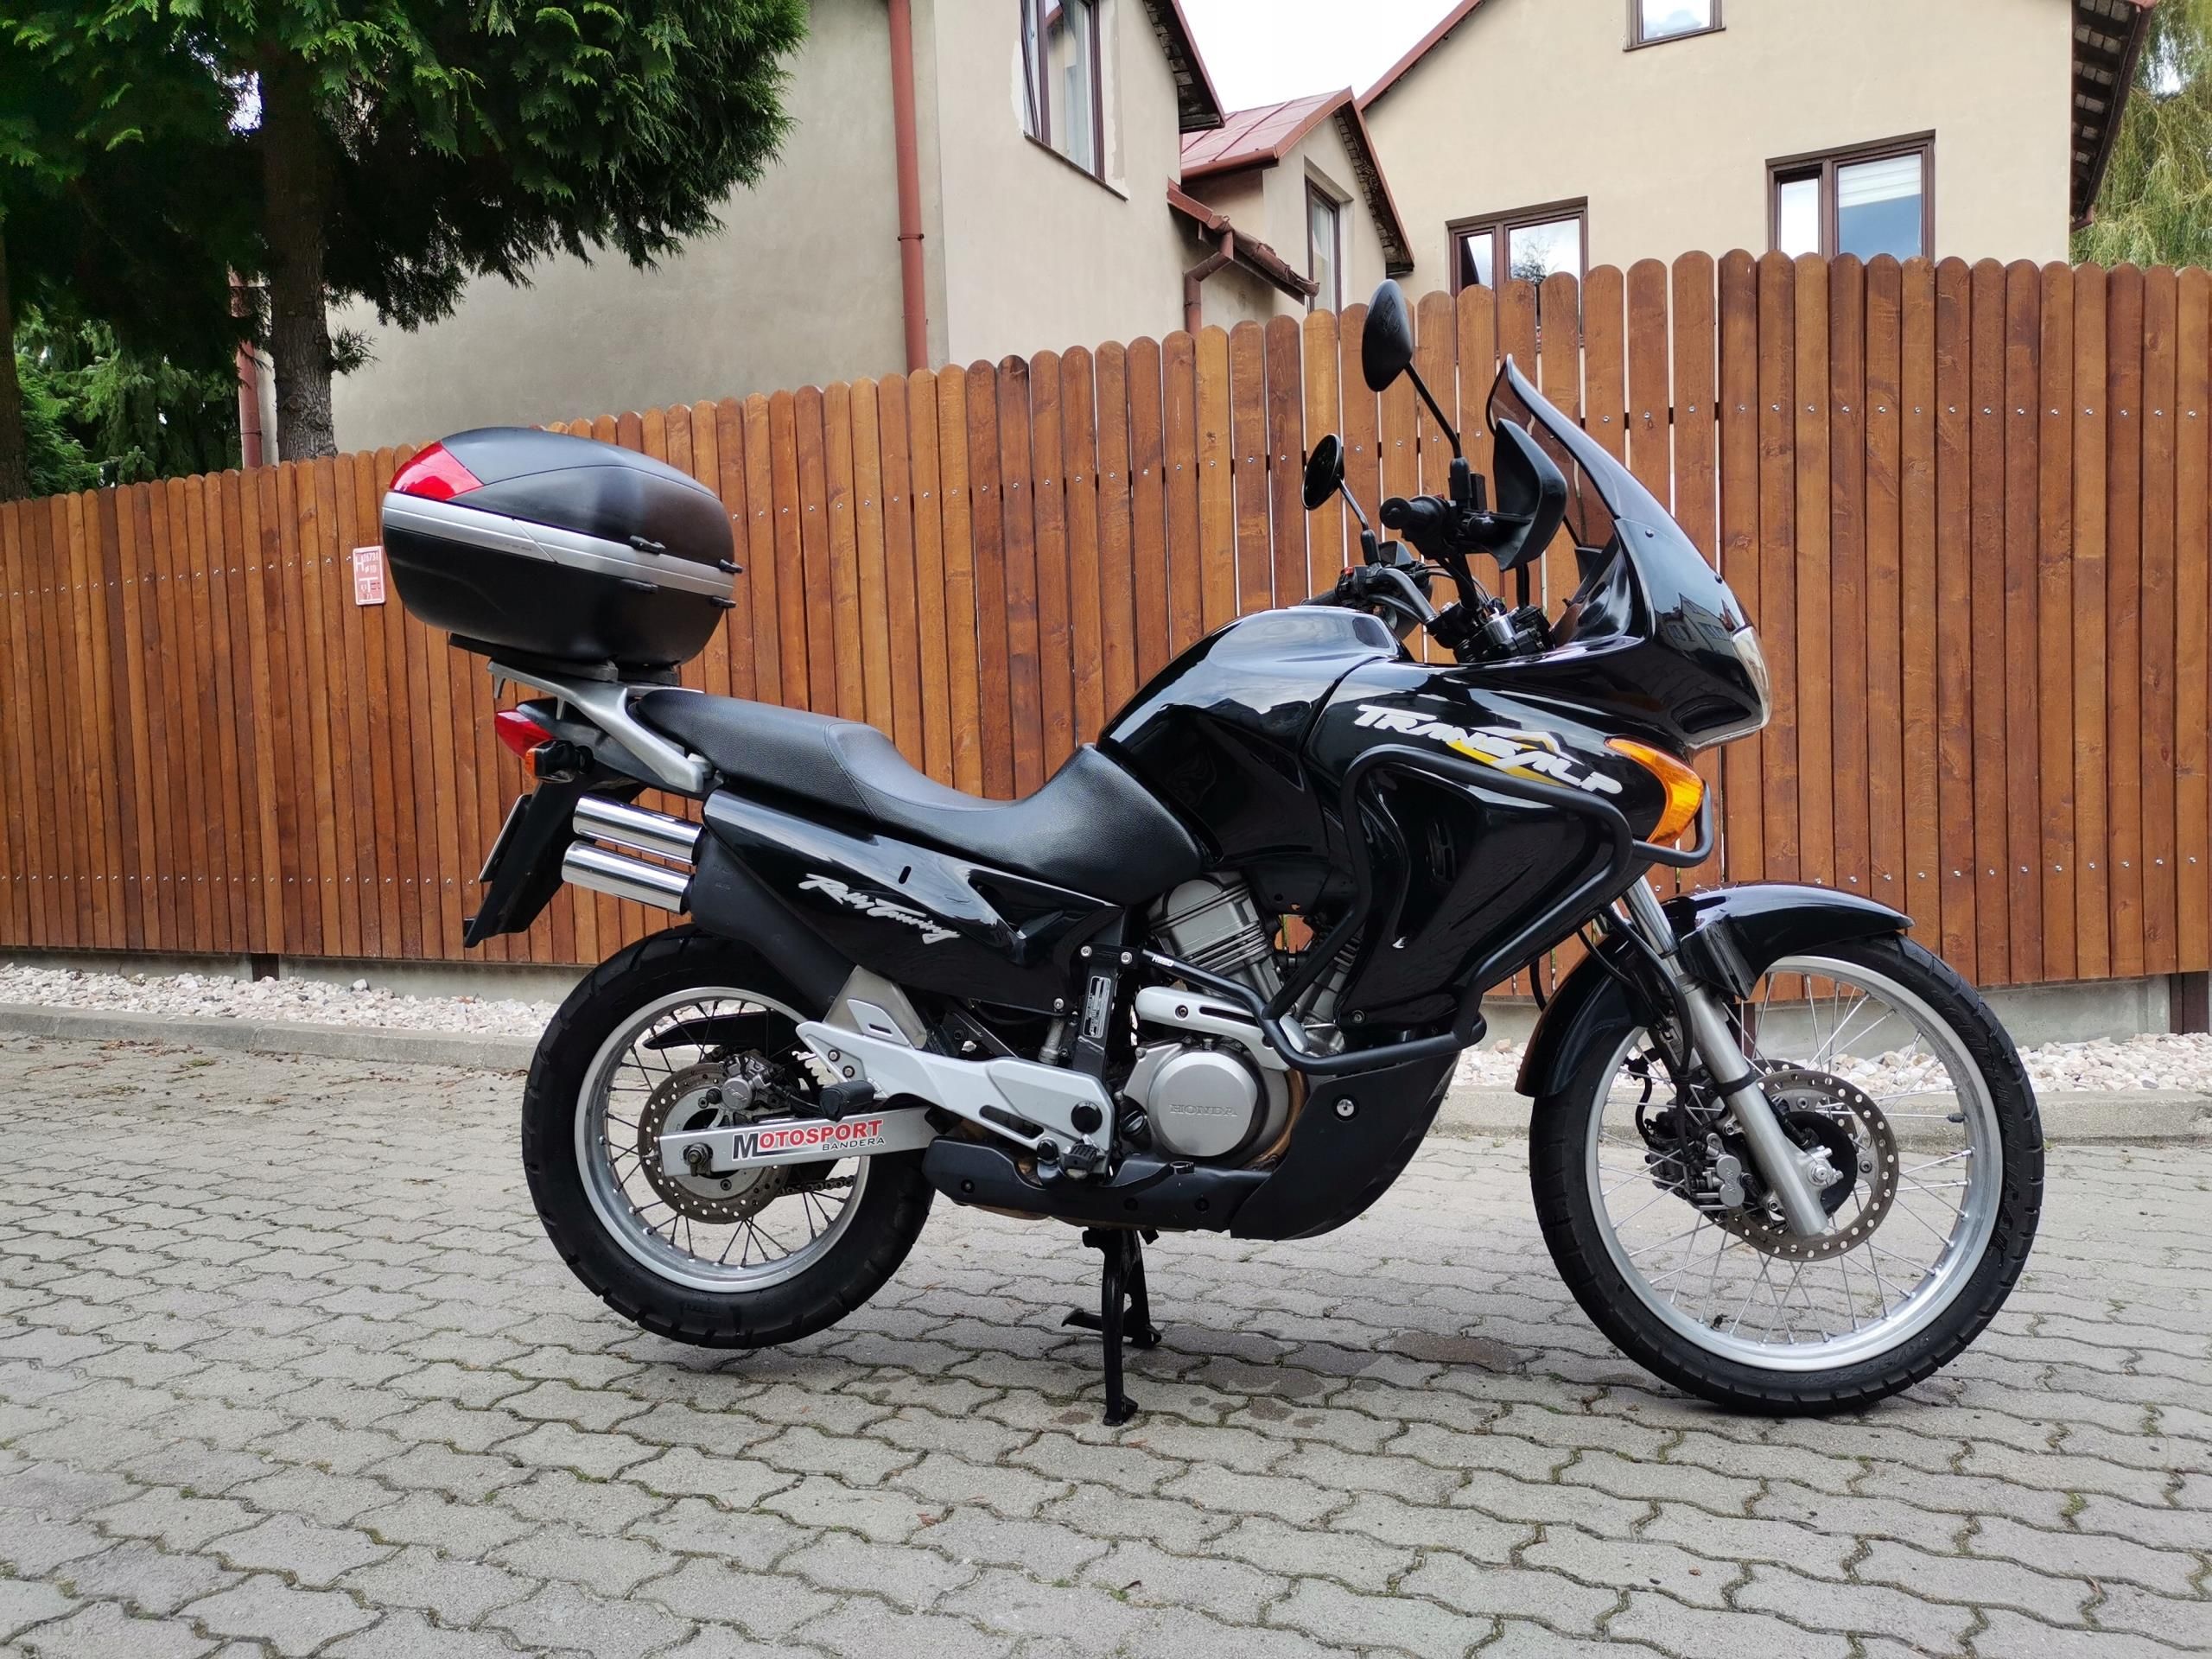 Motocykl Honda Transalp 650 2003R - Opinie I Ceny Na Ceneo.pl